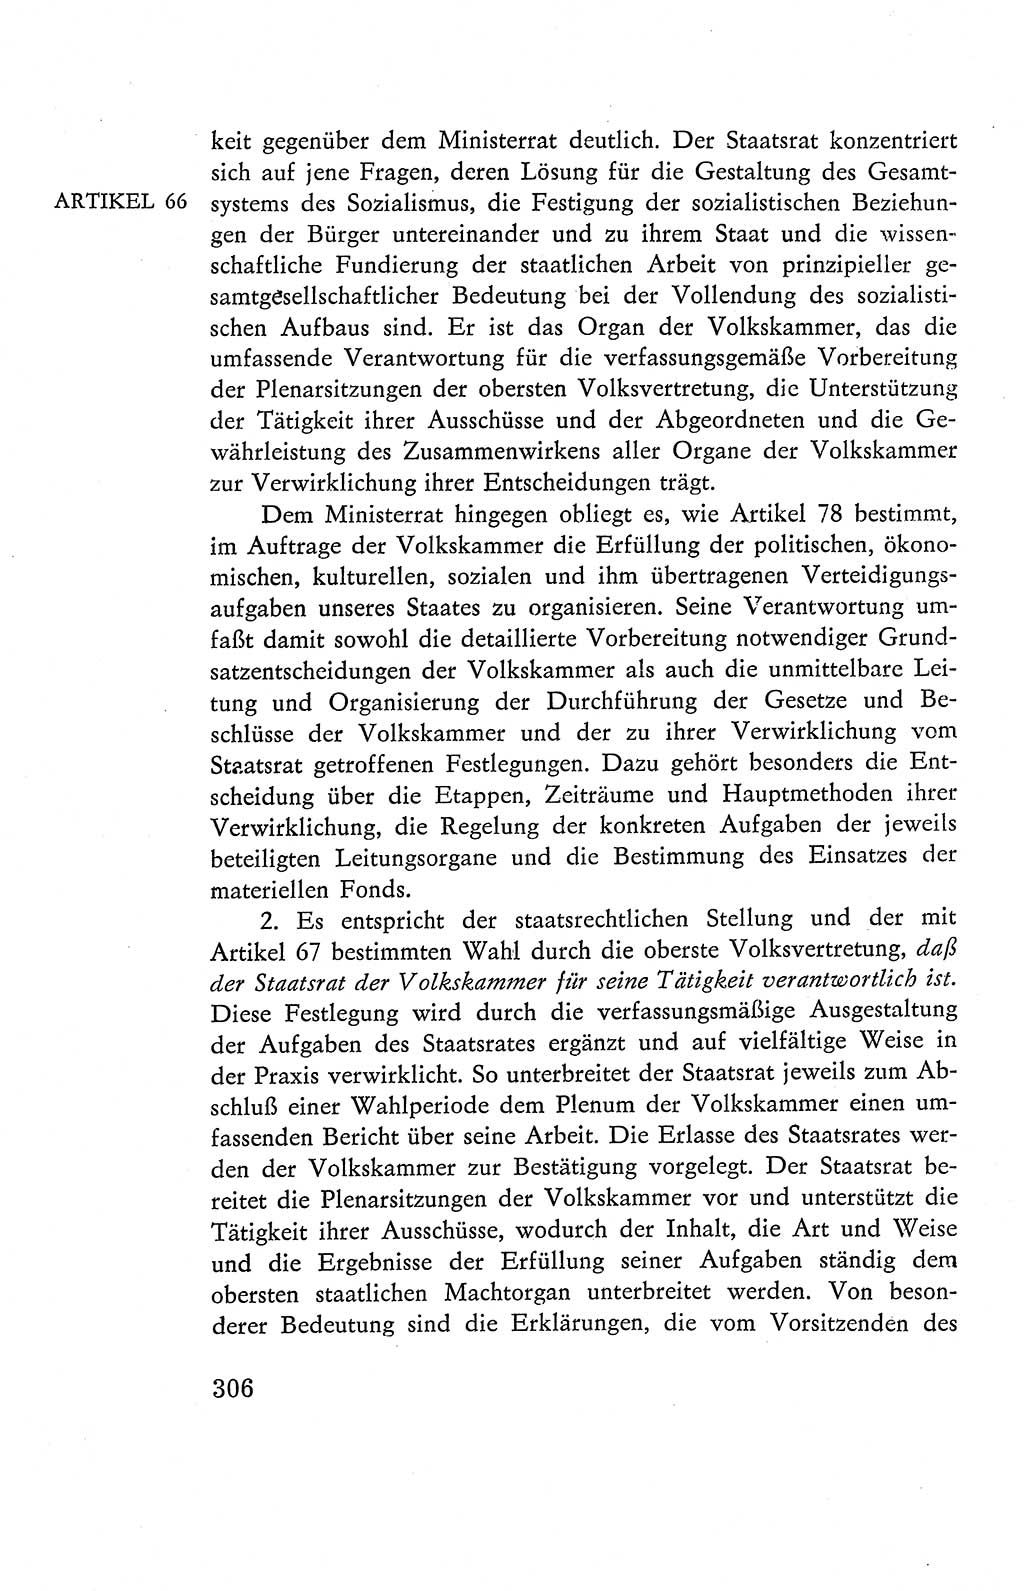 Verfassung der Deutschen Demokratischen Republik (DDR), Dokumente, Kommentar 1969, Band 2, Seite 306 (Verf. DDR Dok. Komm. 1969, Bd. 2, S. 306)